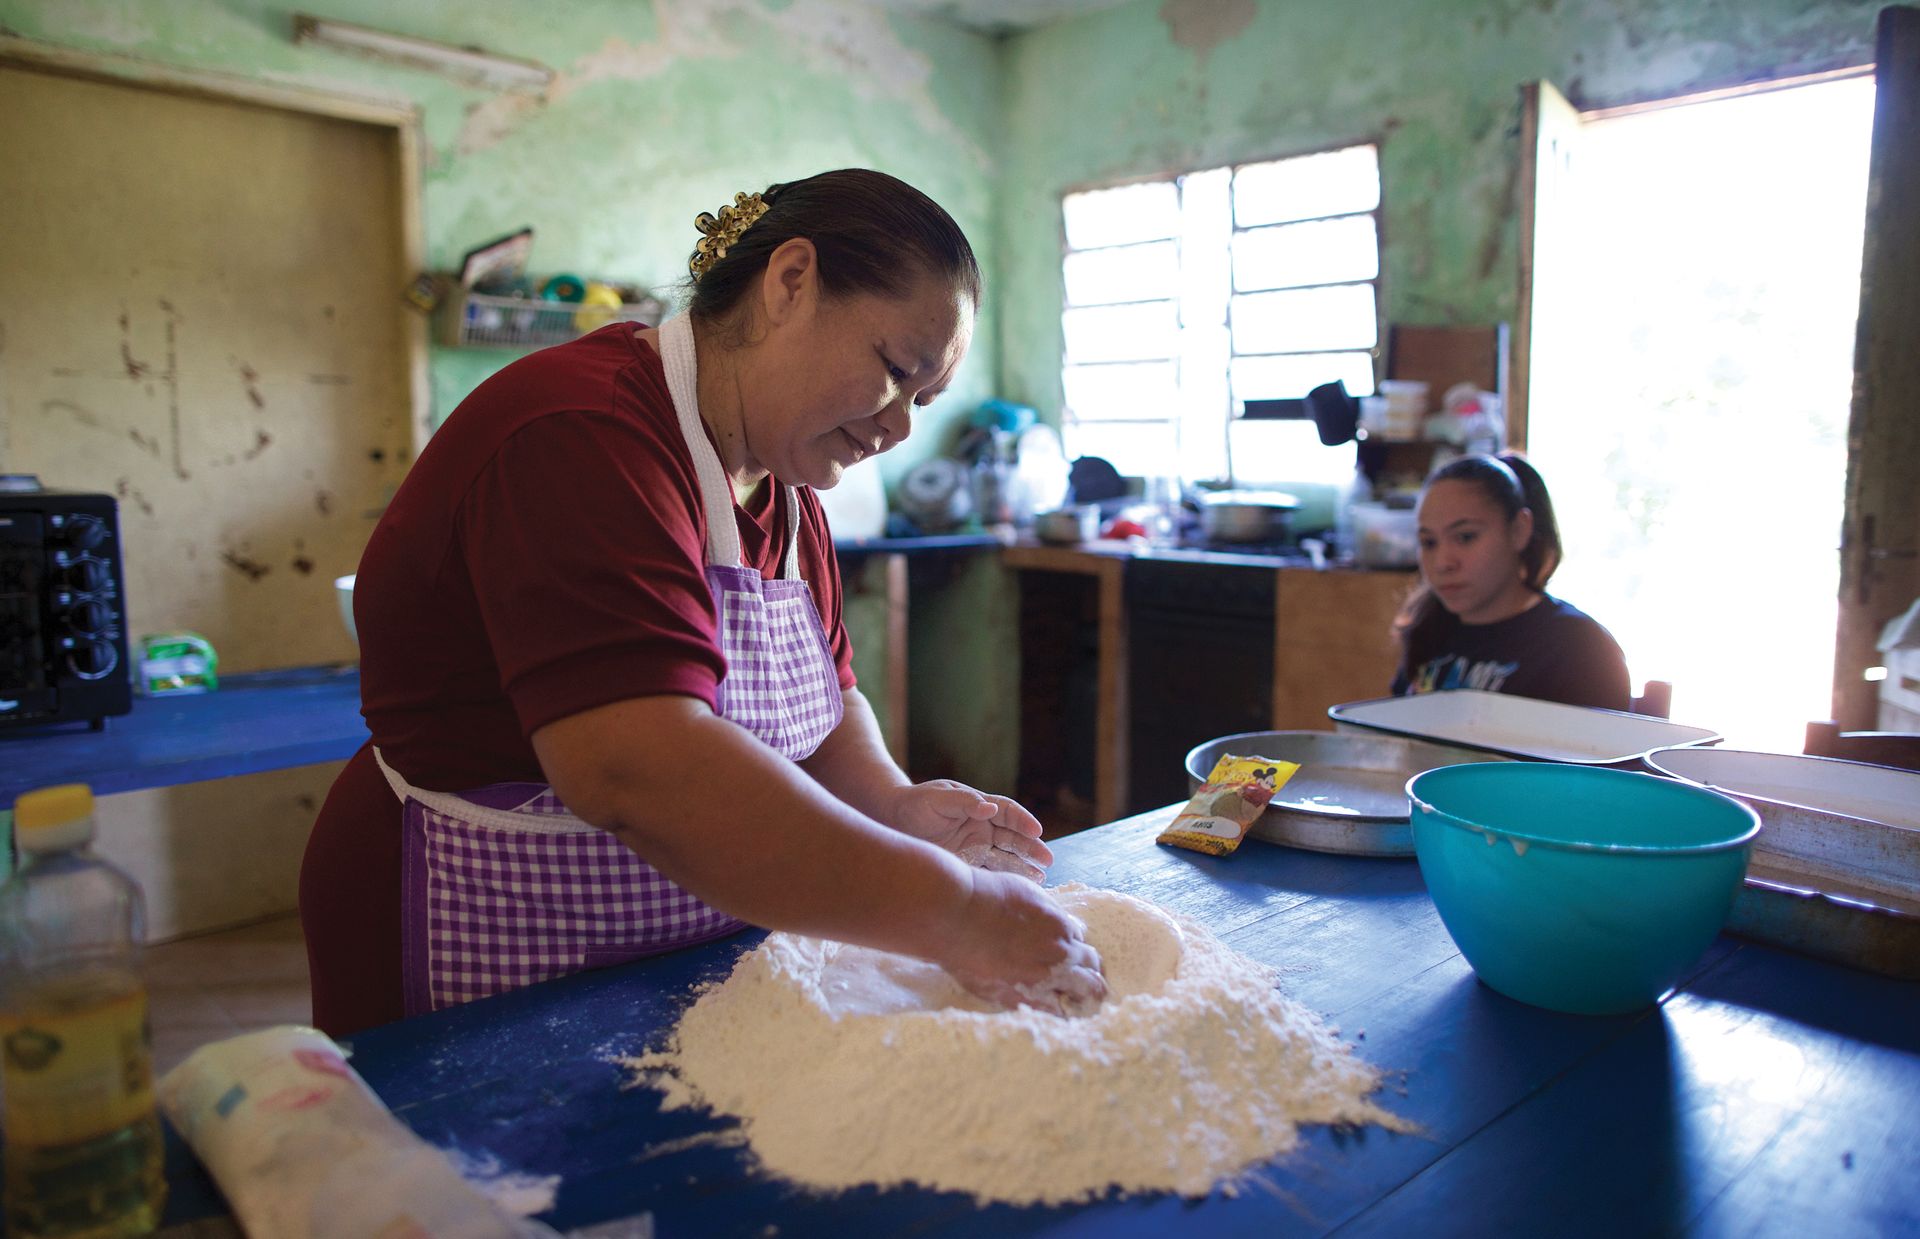 Da Adriana González mit ihrer Familie kaum über die Runden kam, nahm sie an einem Eigenständigkeitskurs der Kirche teil und kam zu dem Schluss, dass sie Brot backen und verkaufen könnte.